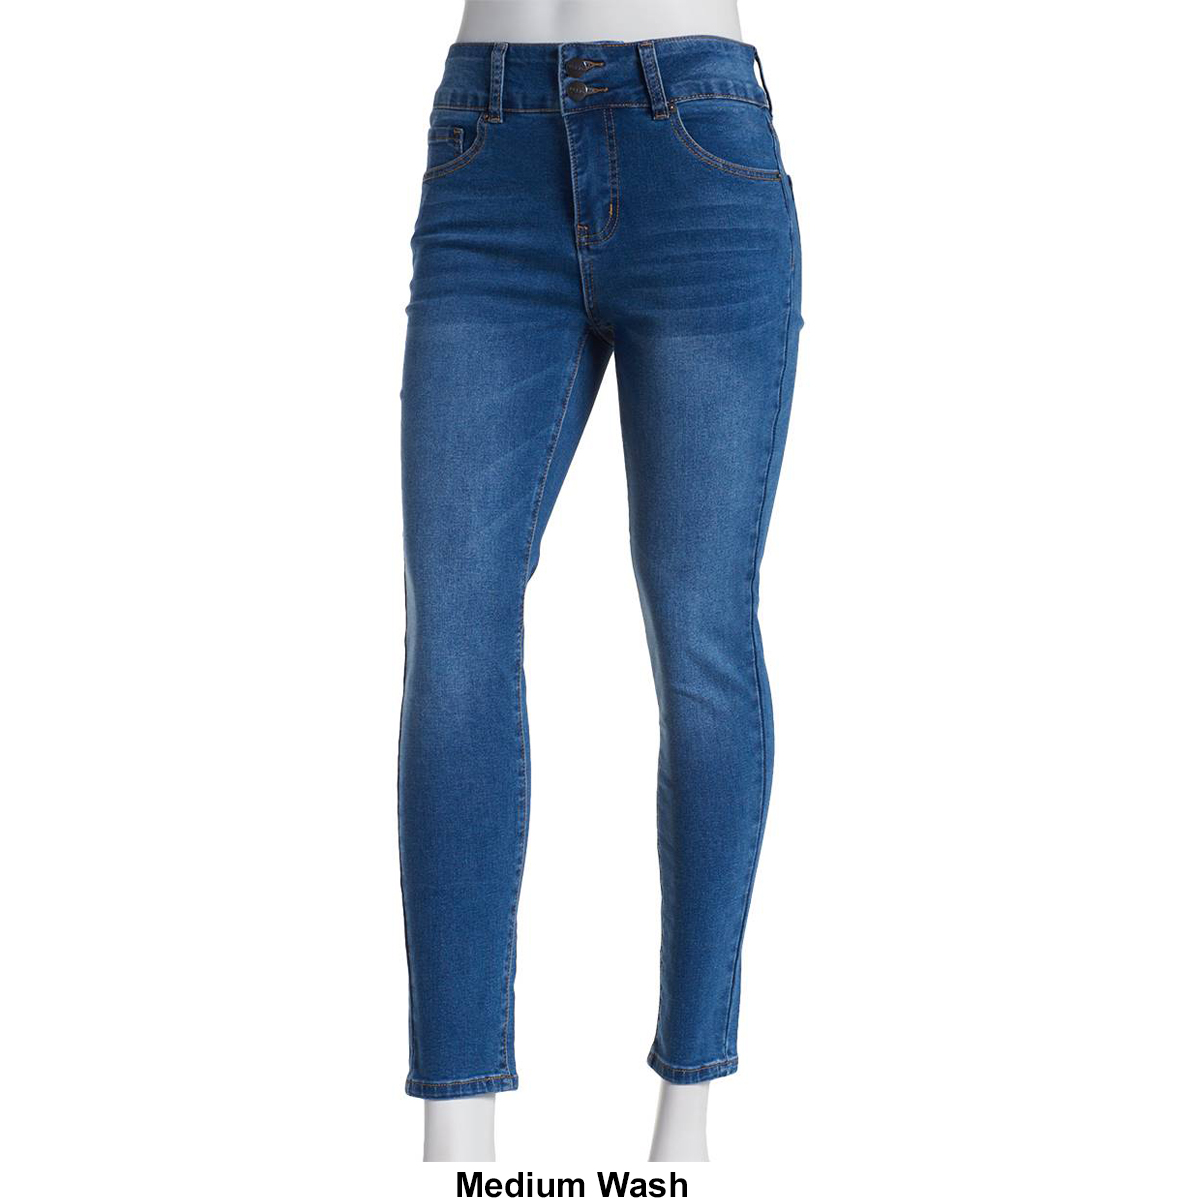 Petite Bleu Denim Basic 2 Button Waist Closure Ankle Jeans